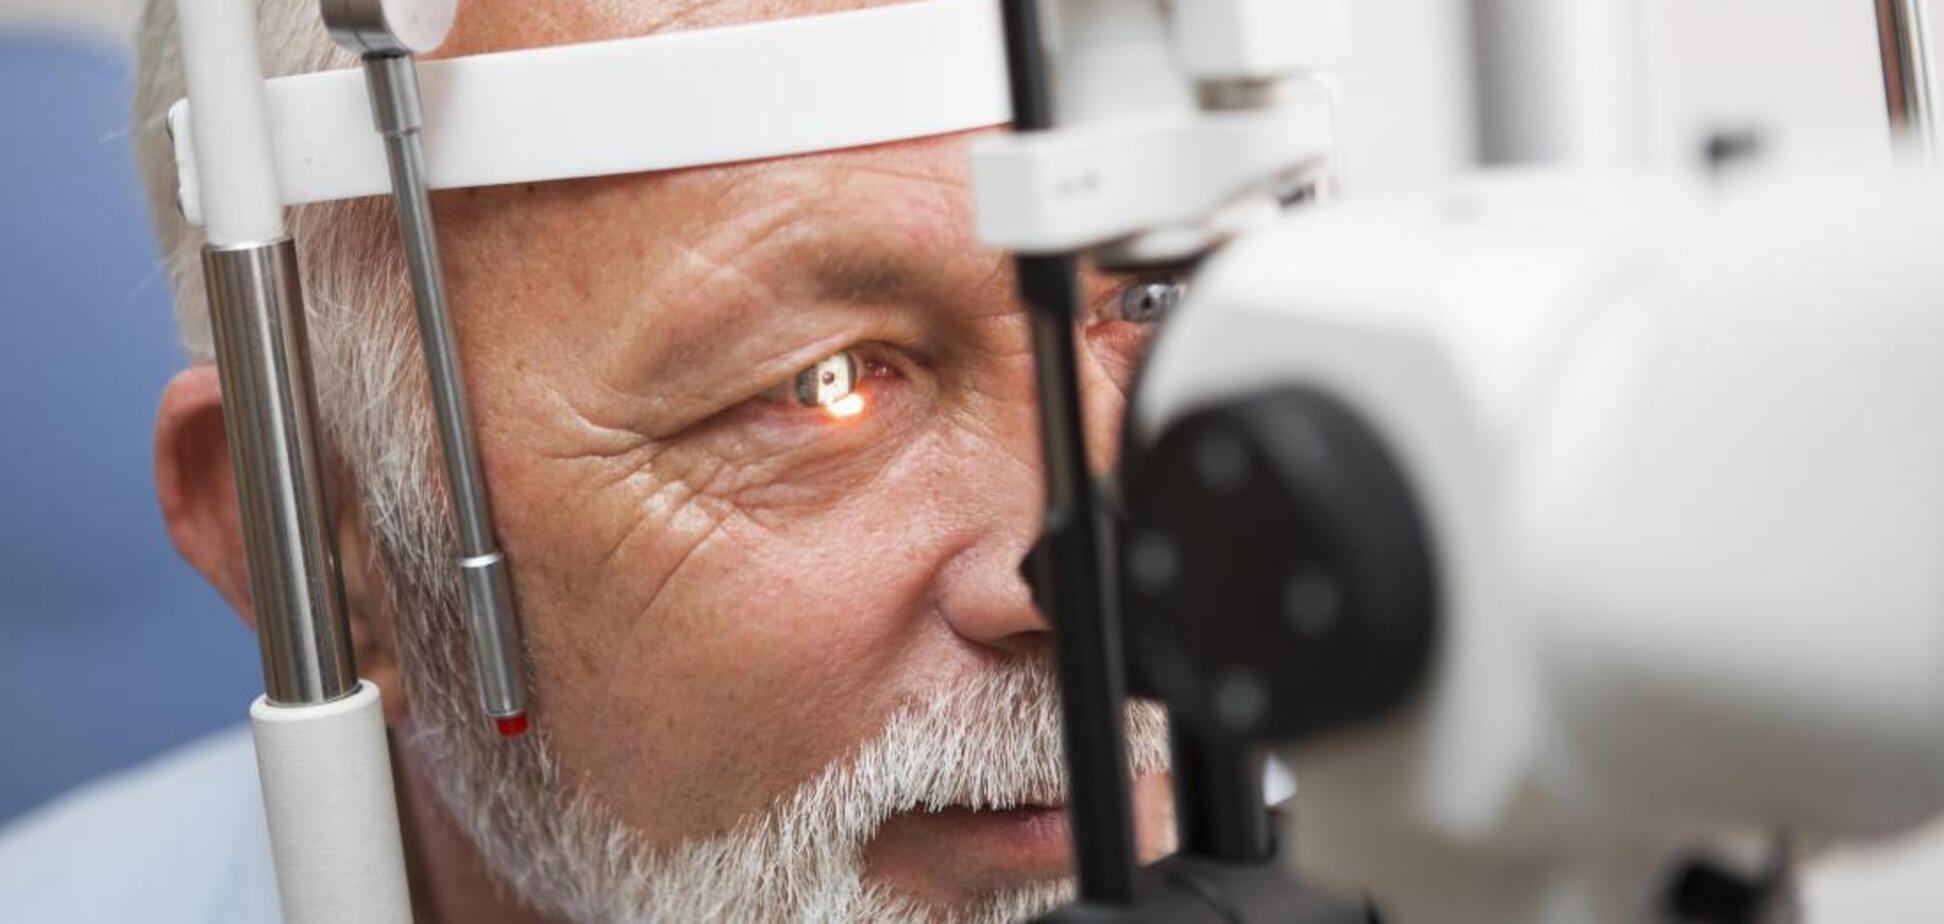 Удаление катаракты может замедлить развитие деменции: исследование